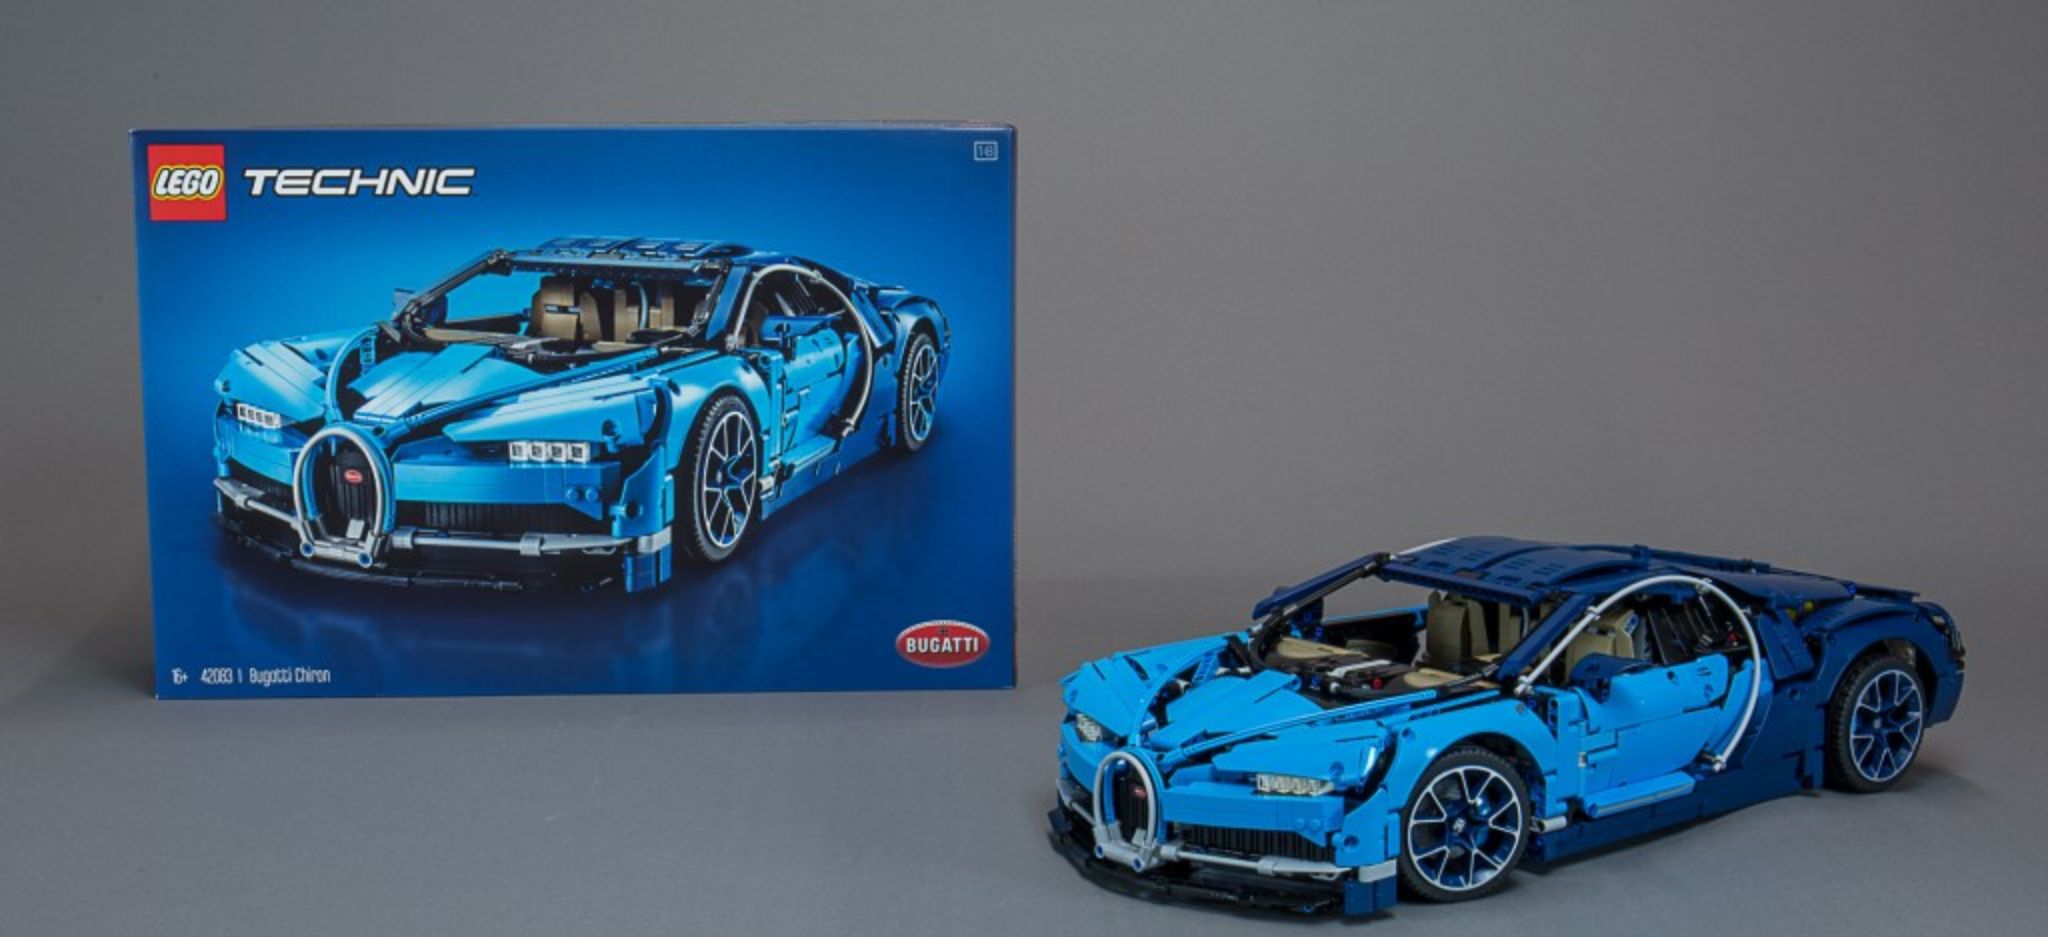 Altre immagini dettagliate della Bugatti Chiron LEGO